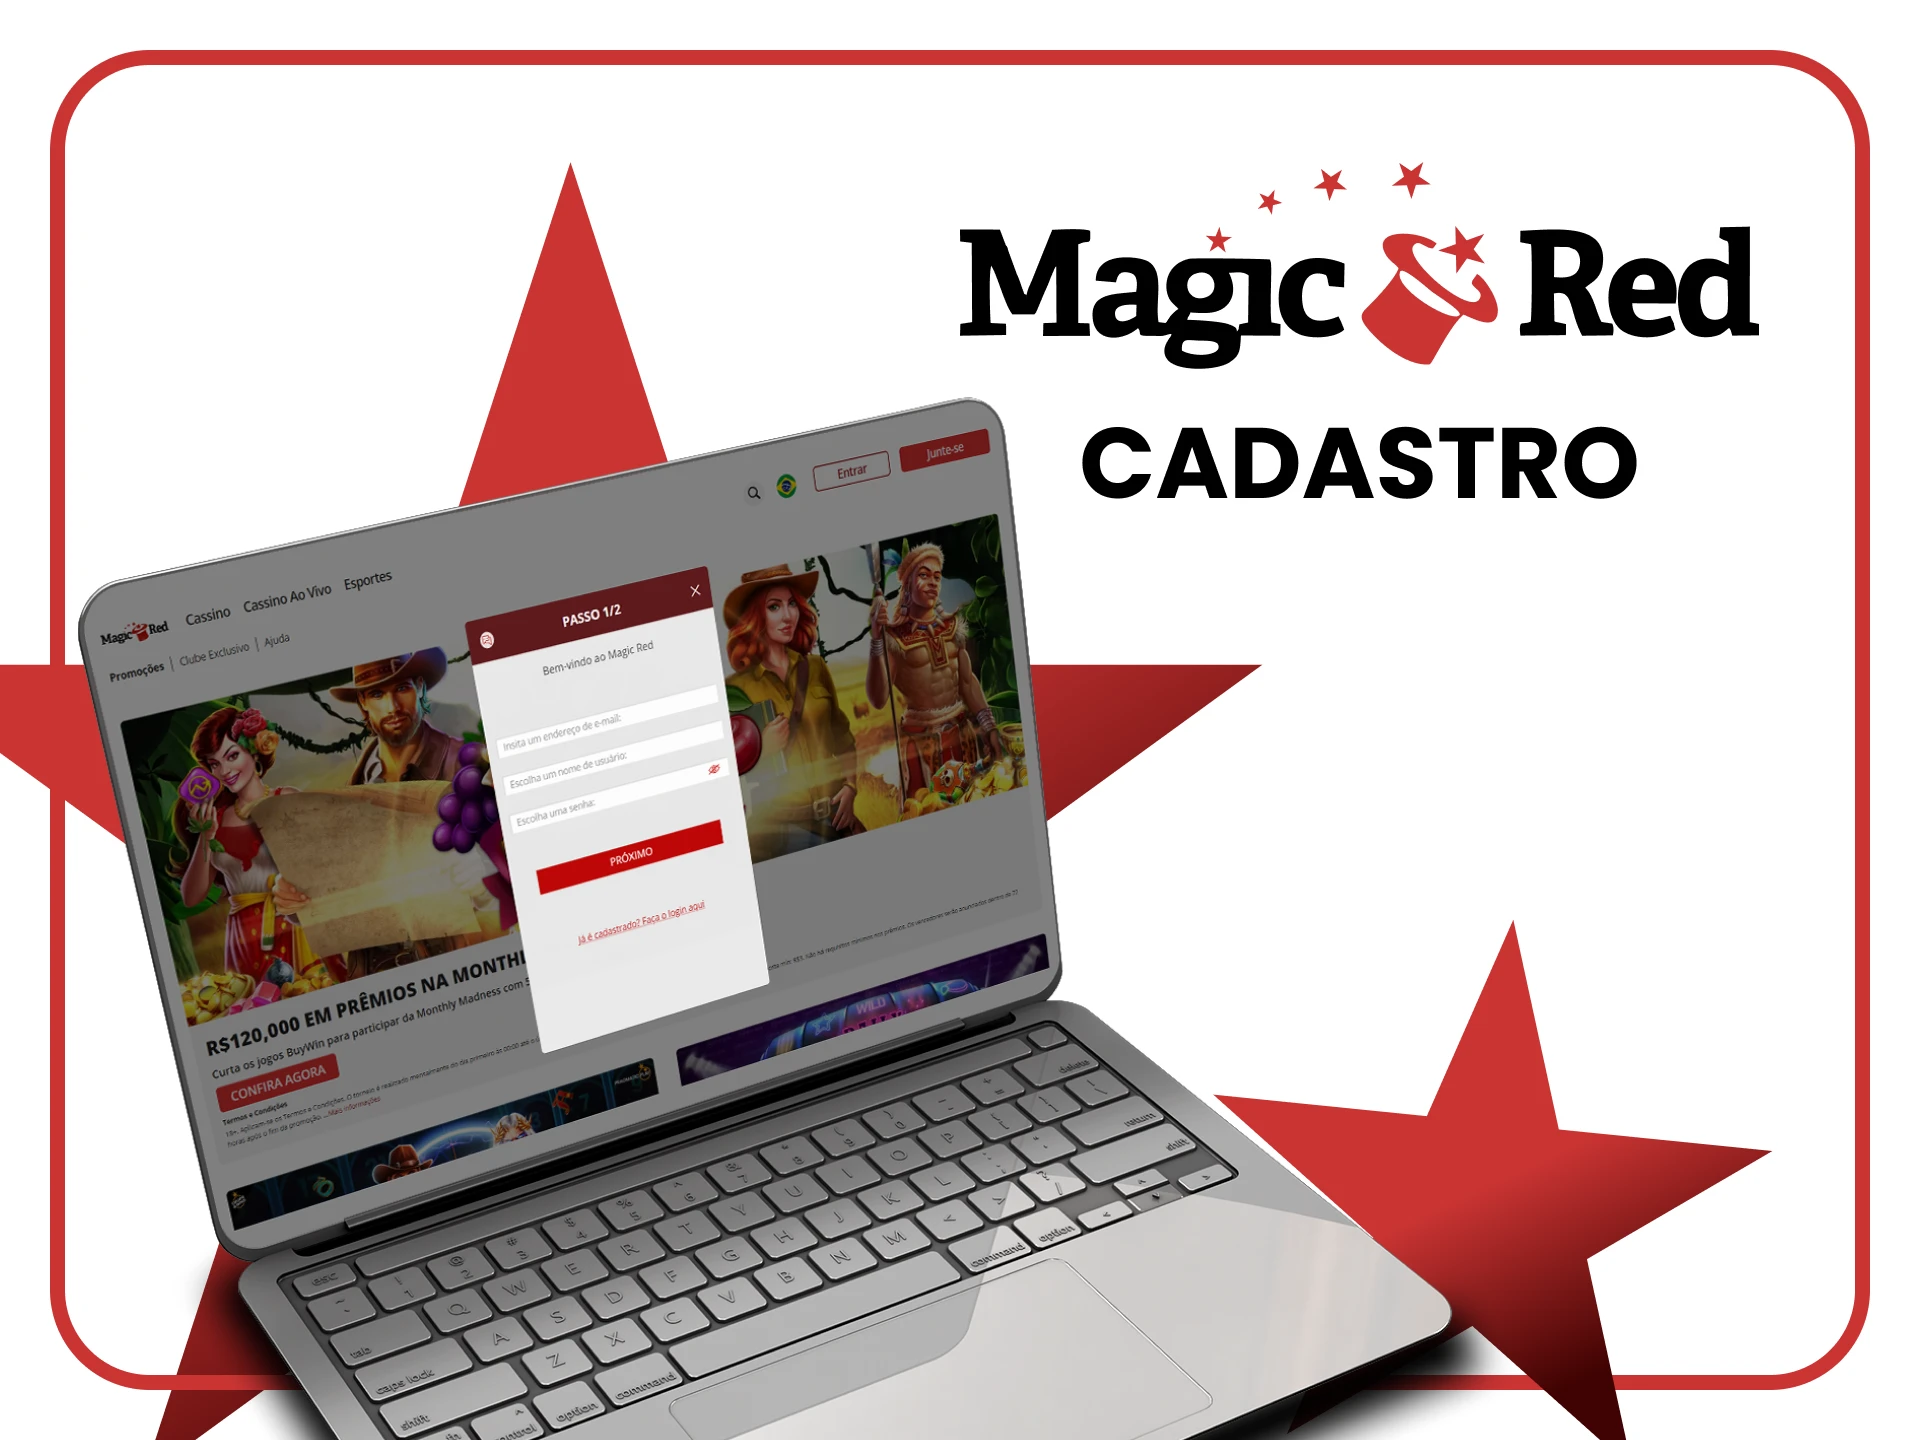 Registre-se no Magic Red Casino em passos simples.